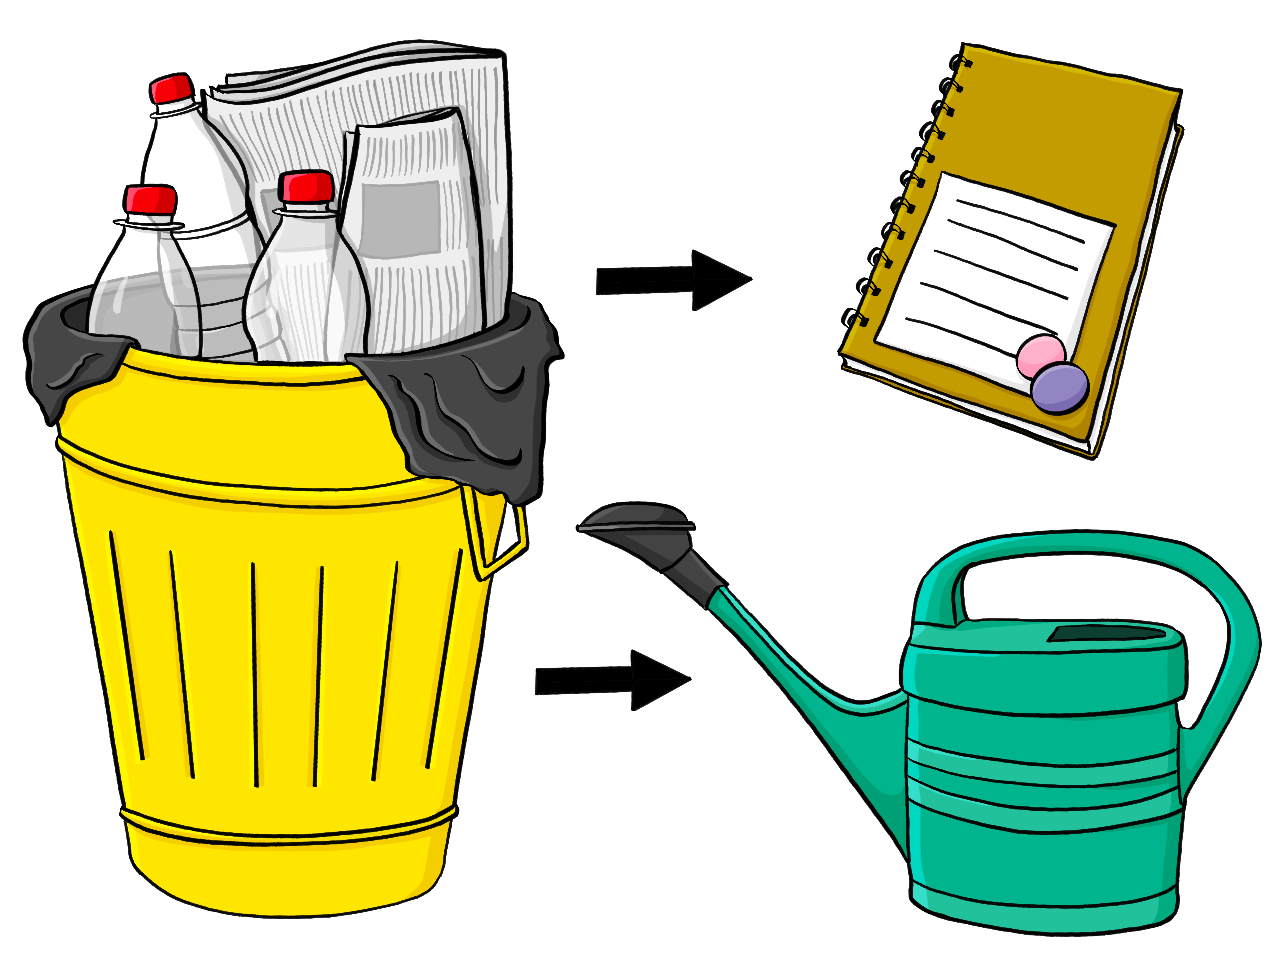 Ein Mülleimer mit Zeitungen und Plastikflaschen. Pfeile zeigen vom Mülleimer auf einen Schreibblock und eine Plastikgießkanne.